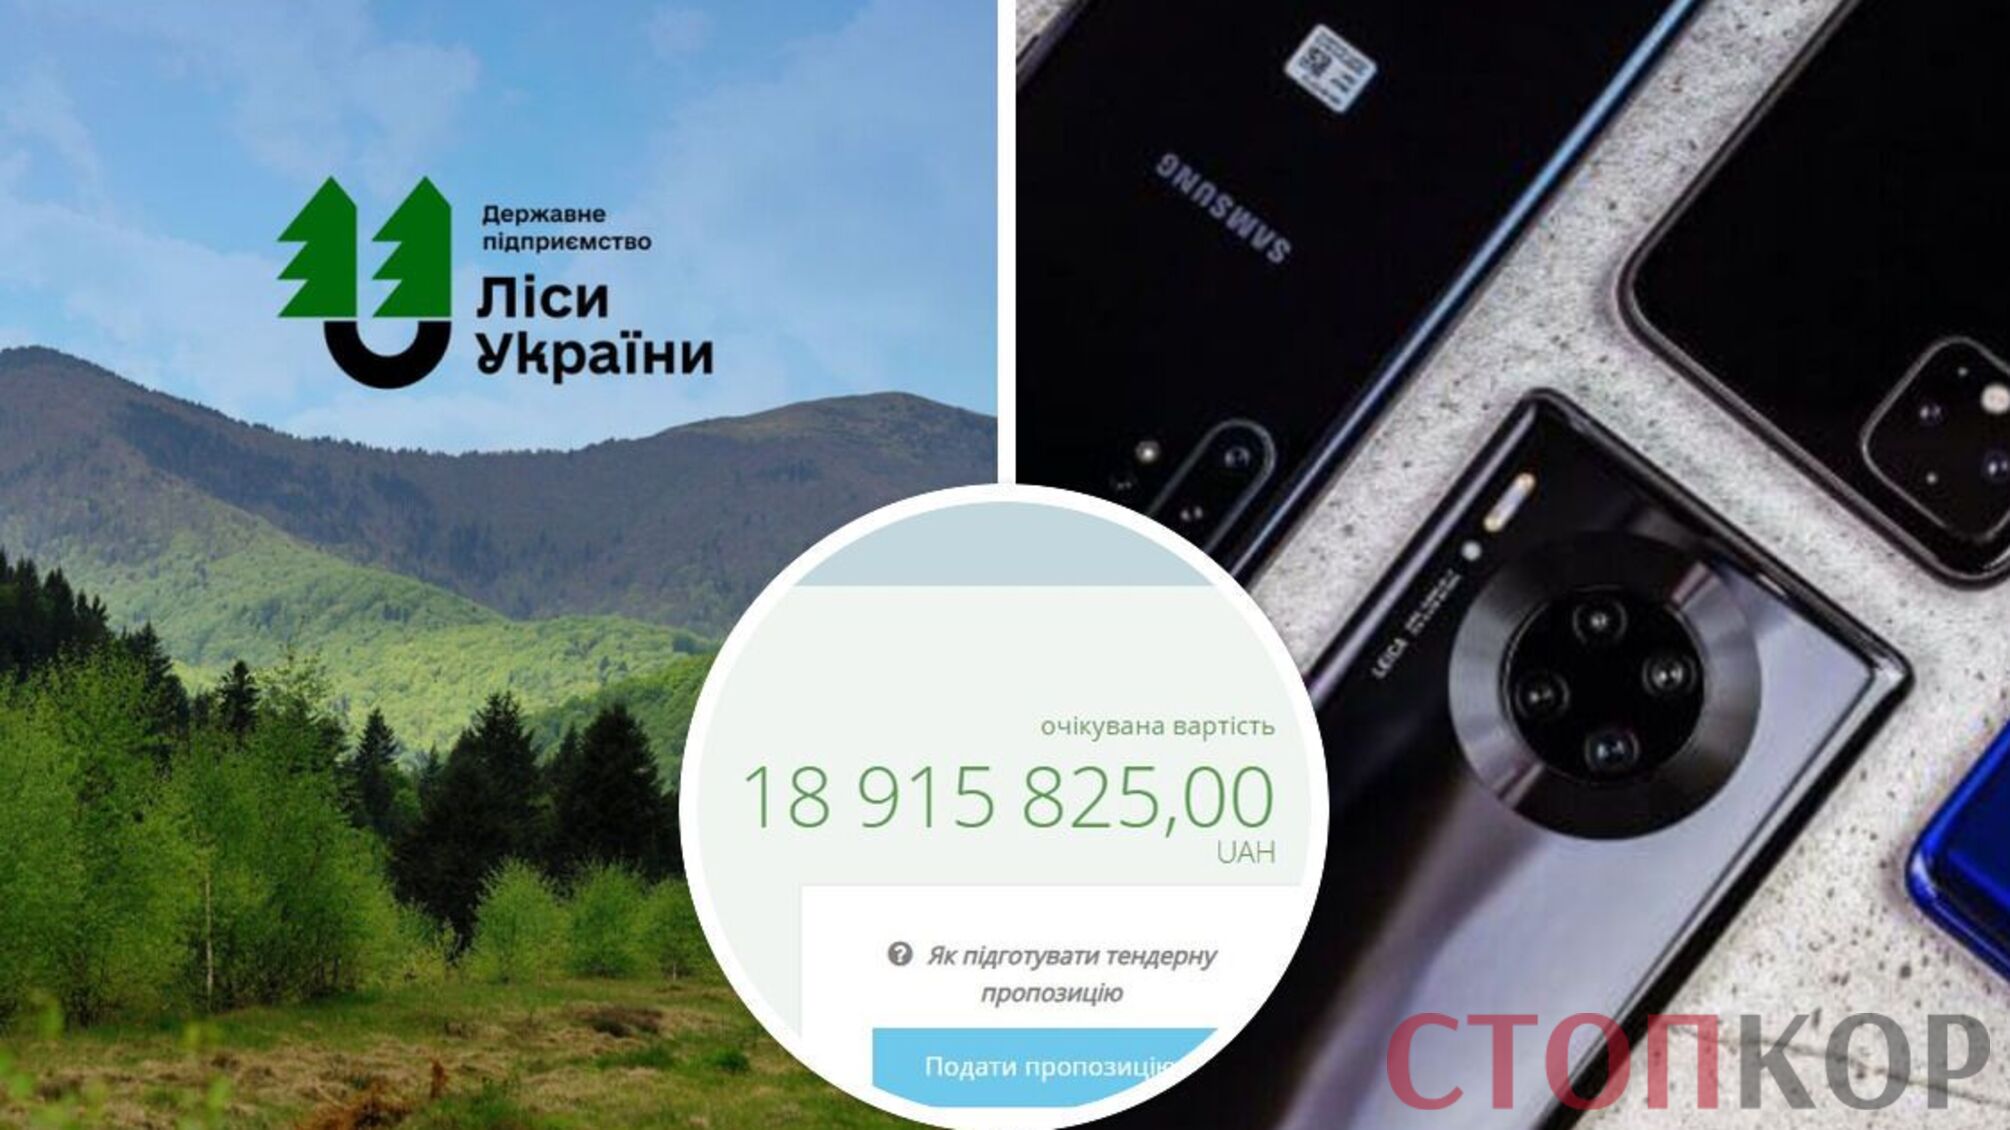 ДП 'Ліси України' закупить 2500 телефонів на майже 19 млн грн